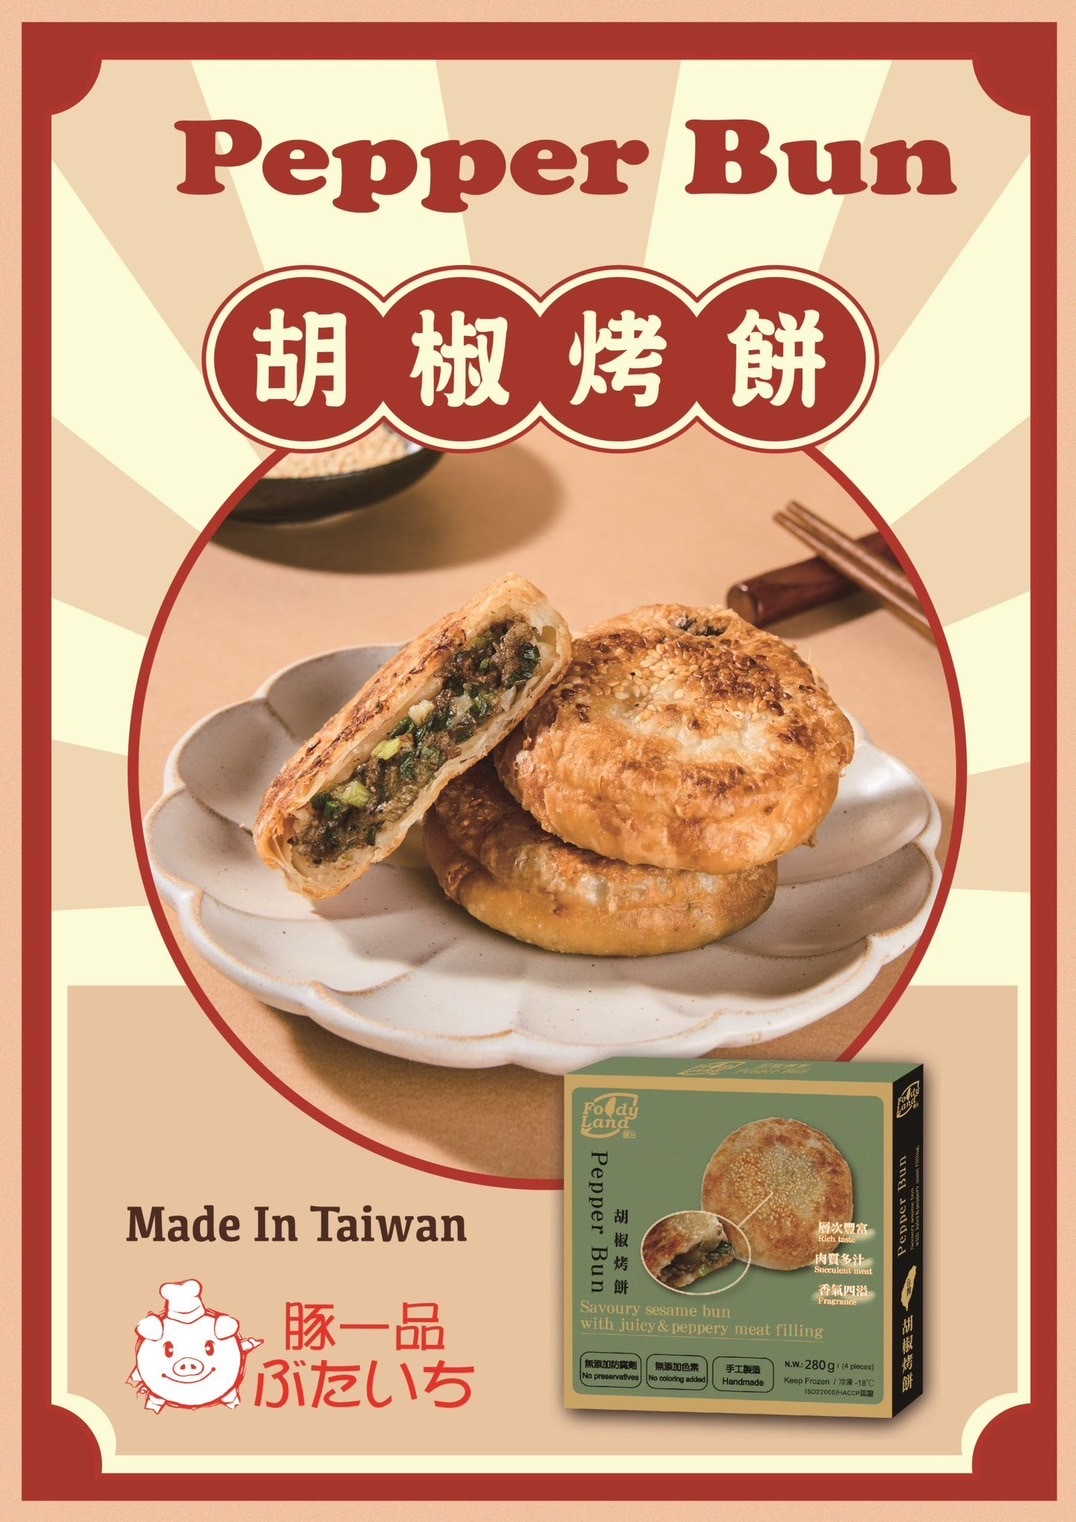 胡椒烤餅 (急凍-18°C) #台灣製造 #夜市味道 #派對小食